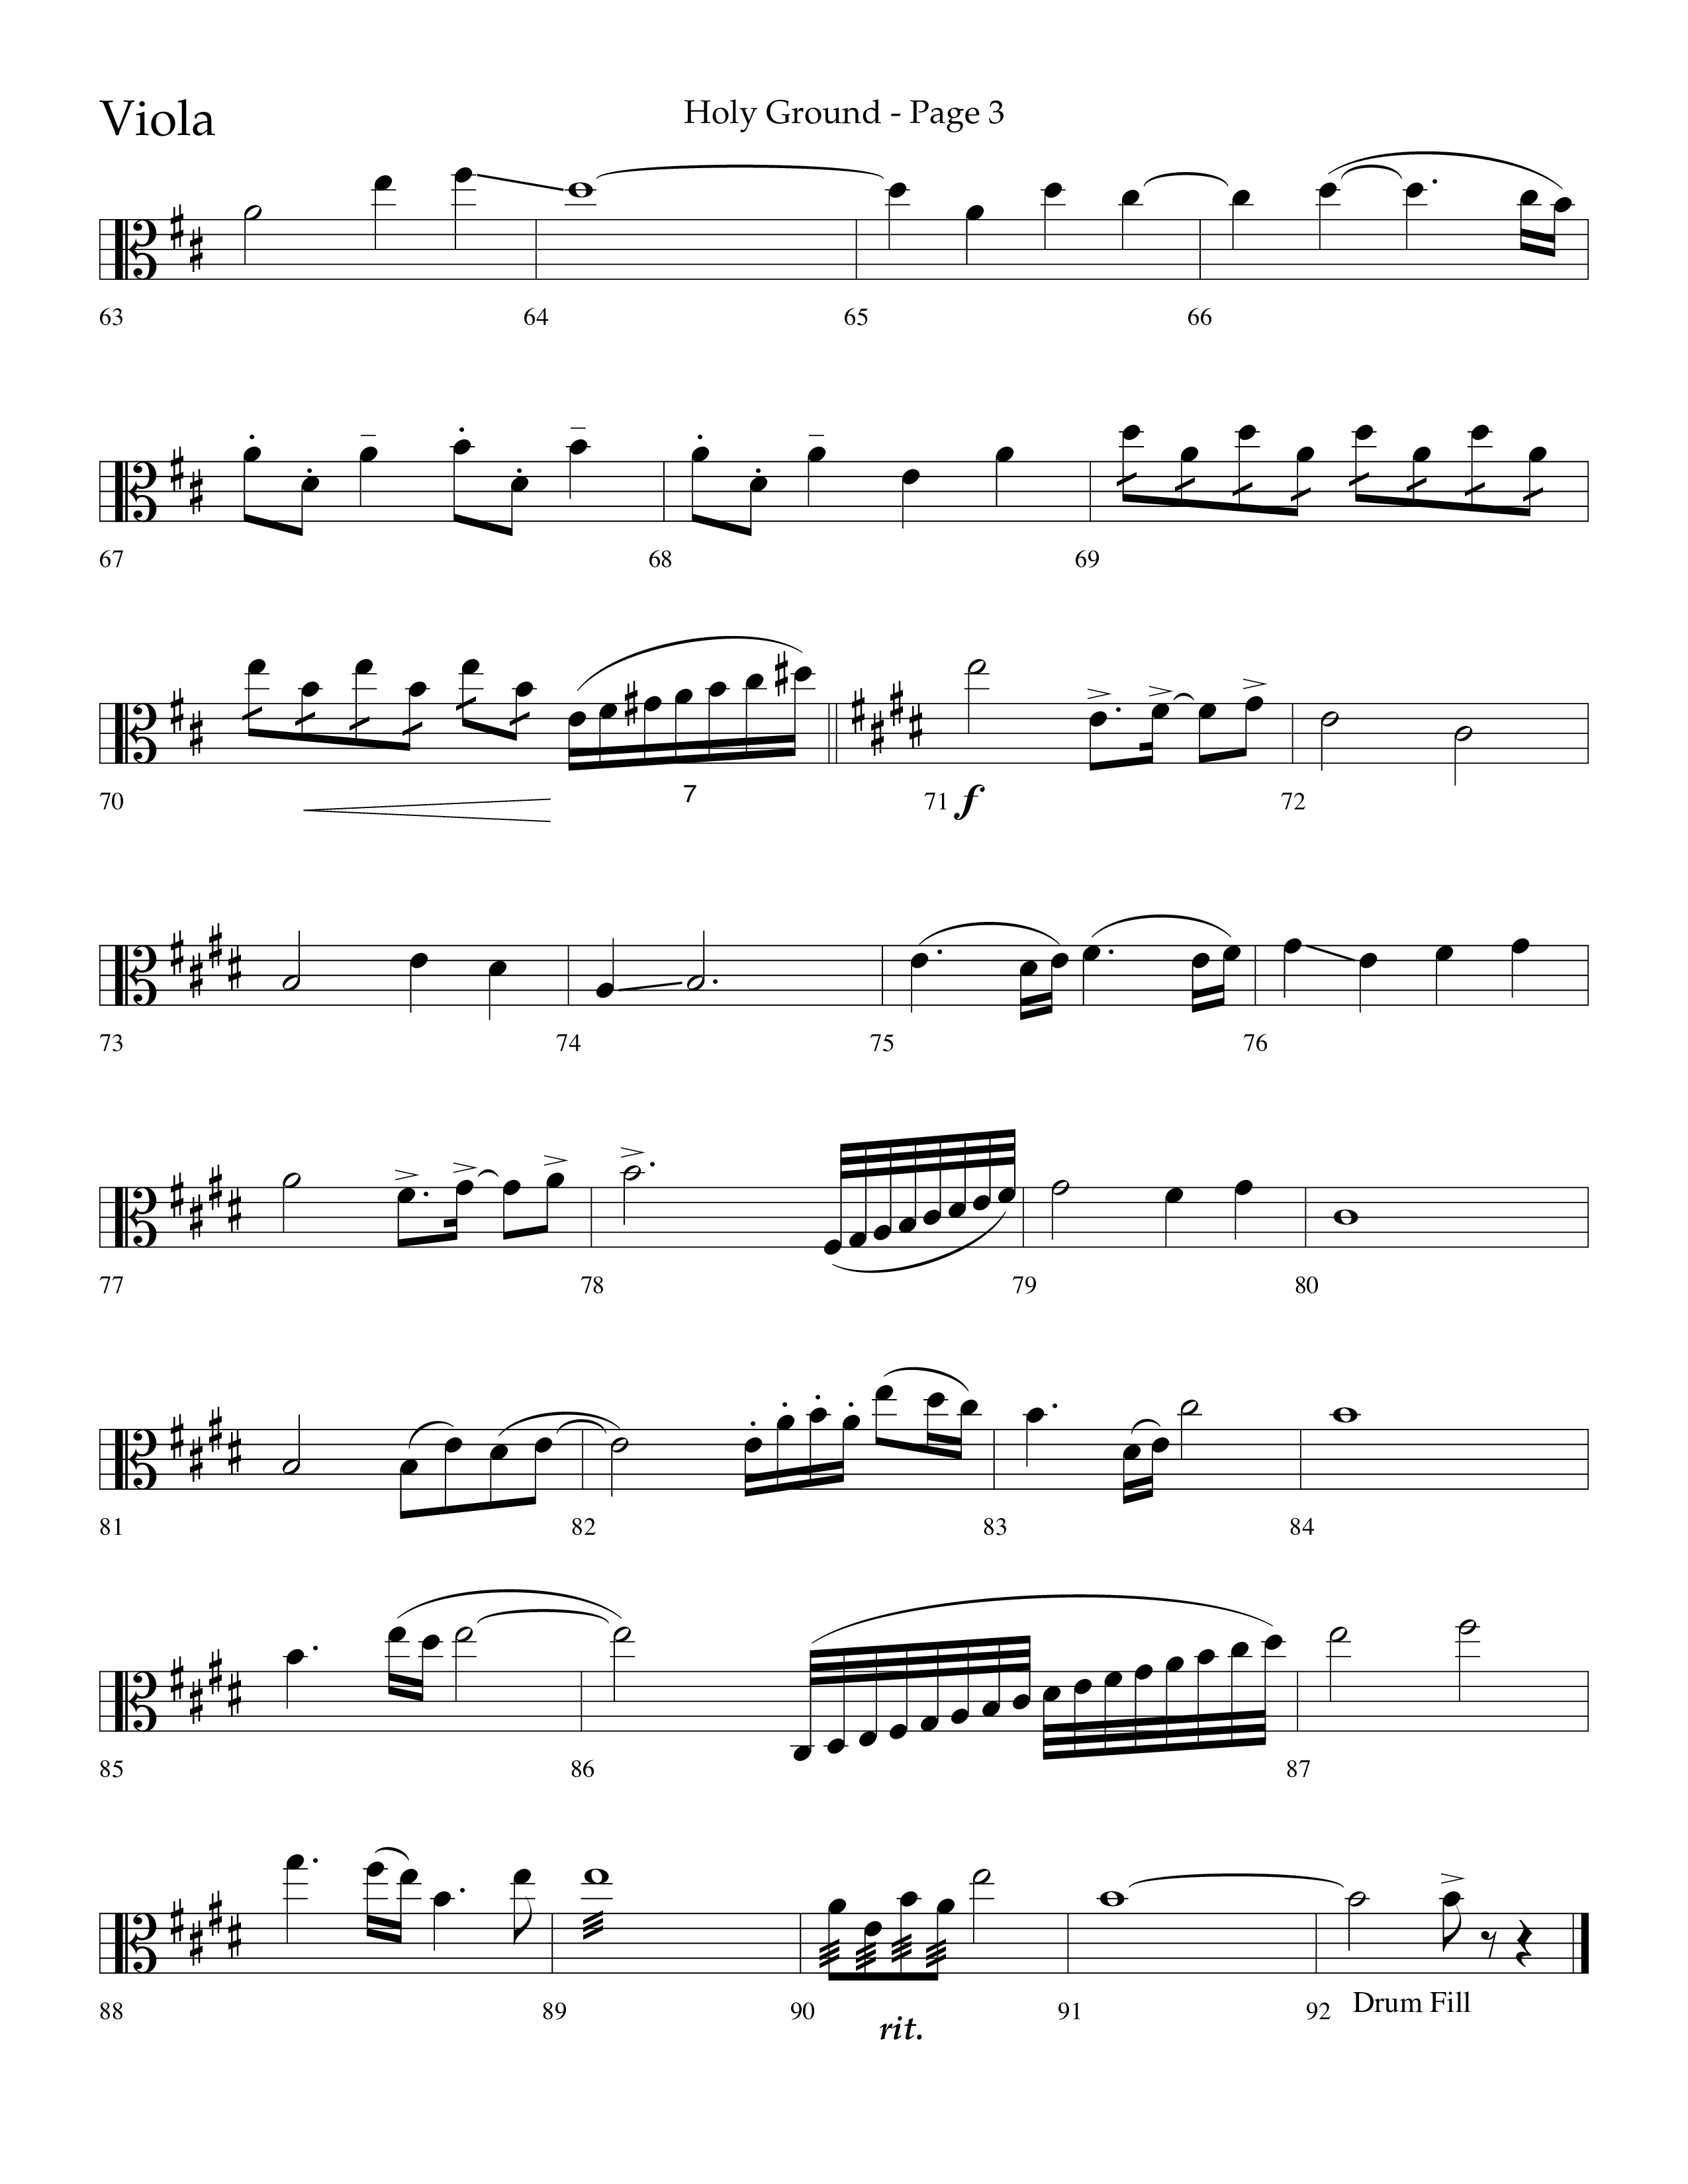 Holy Ground (Choral Anthem SATB) Viola (Lifeway Choral / Arr. Bradley Knight)